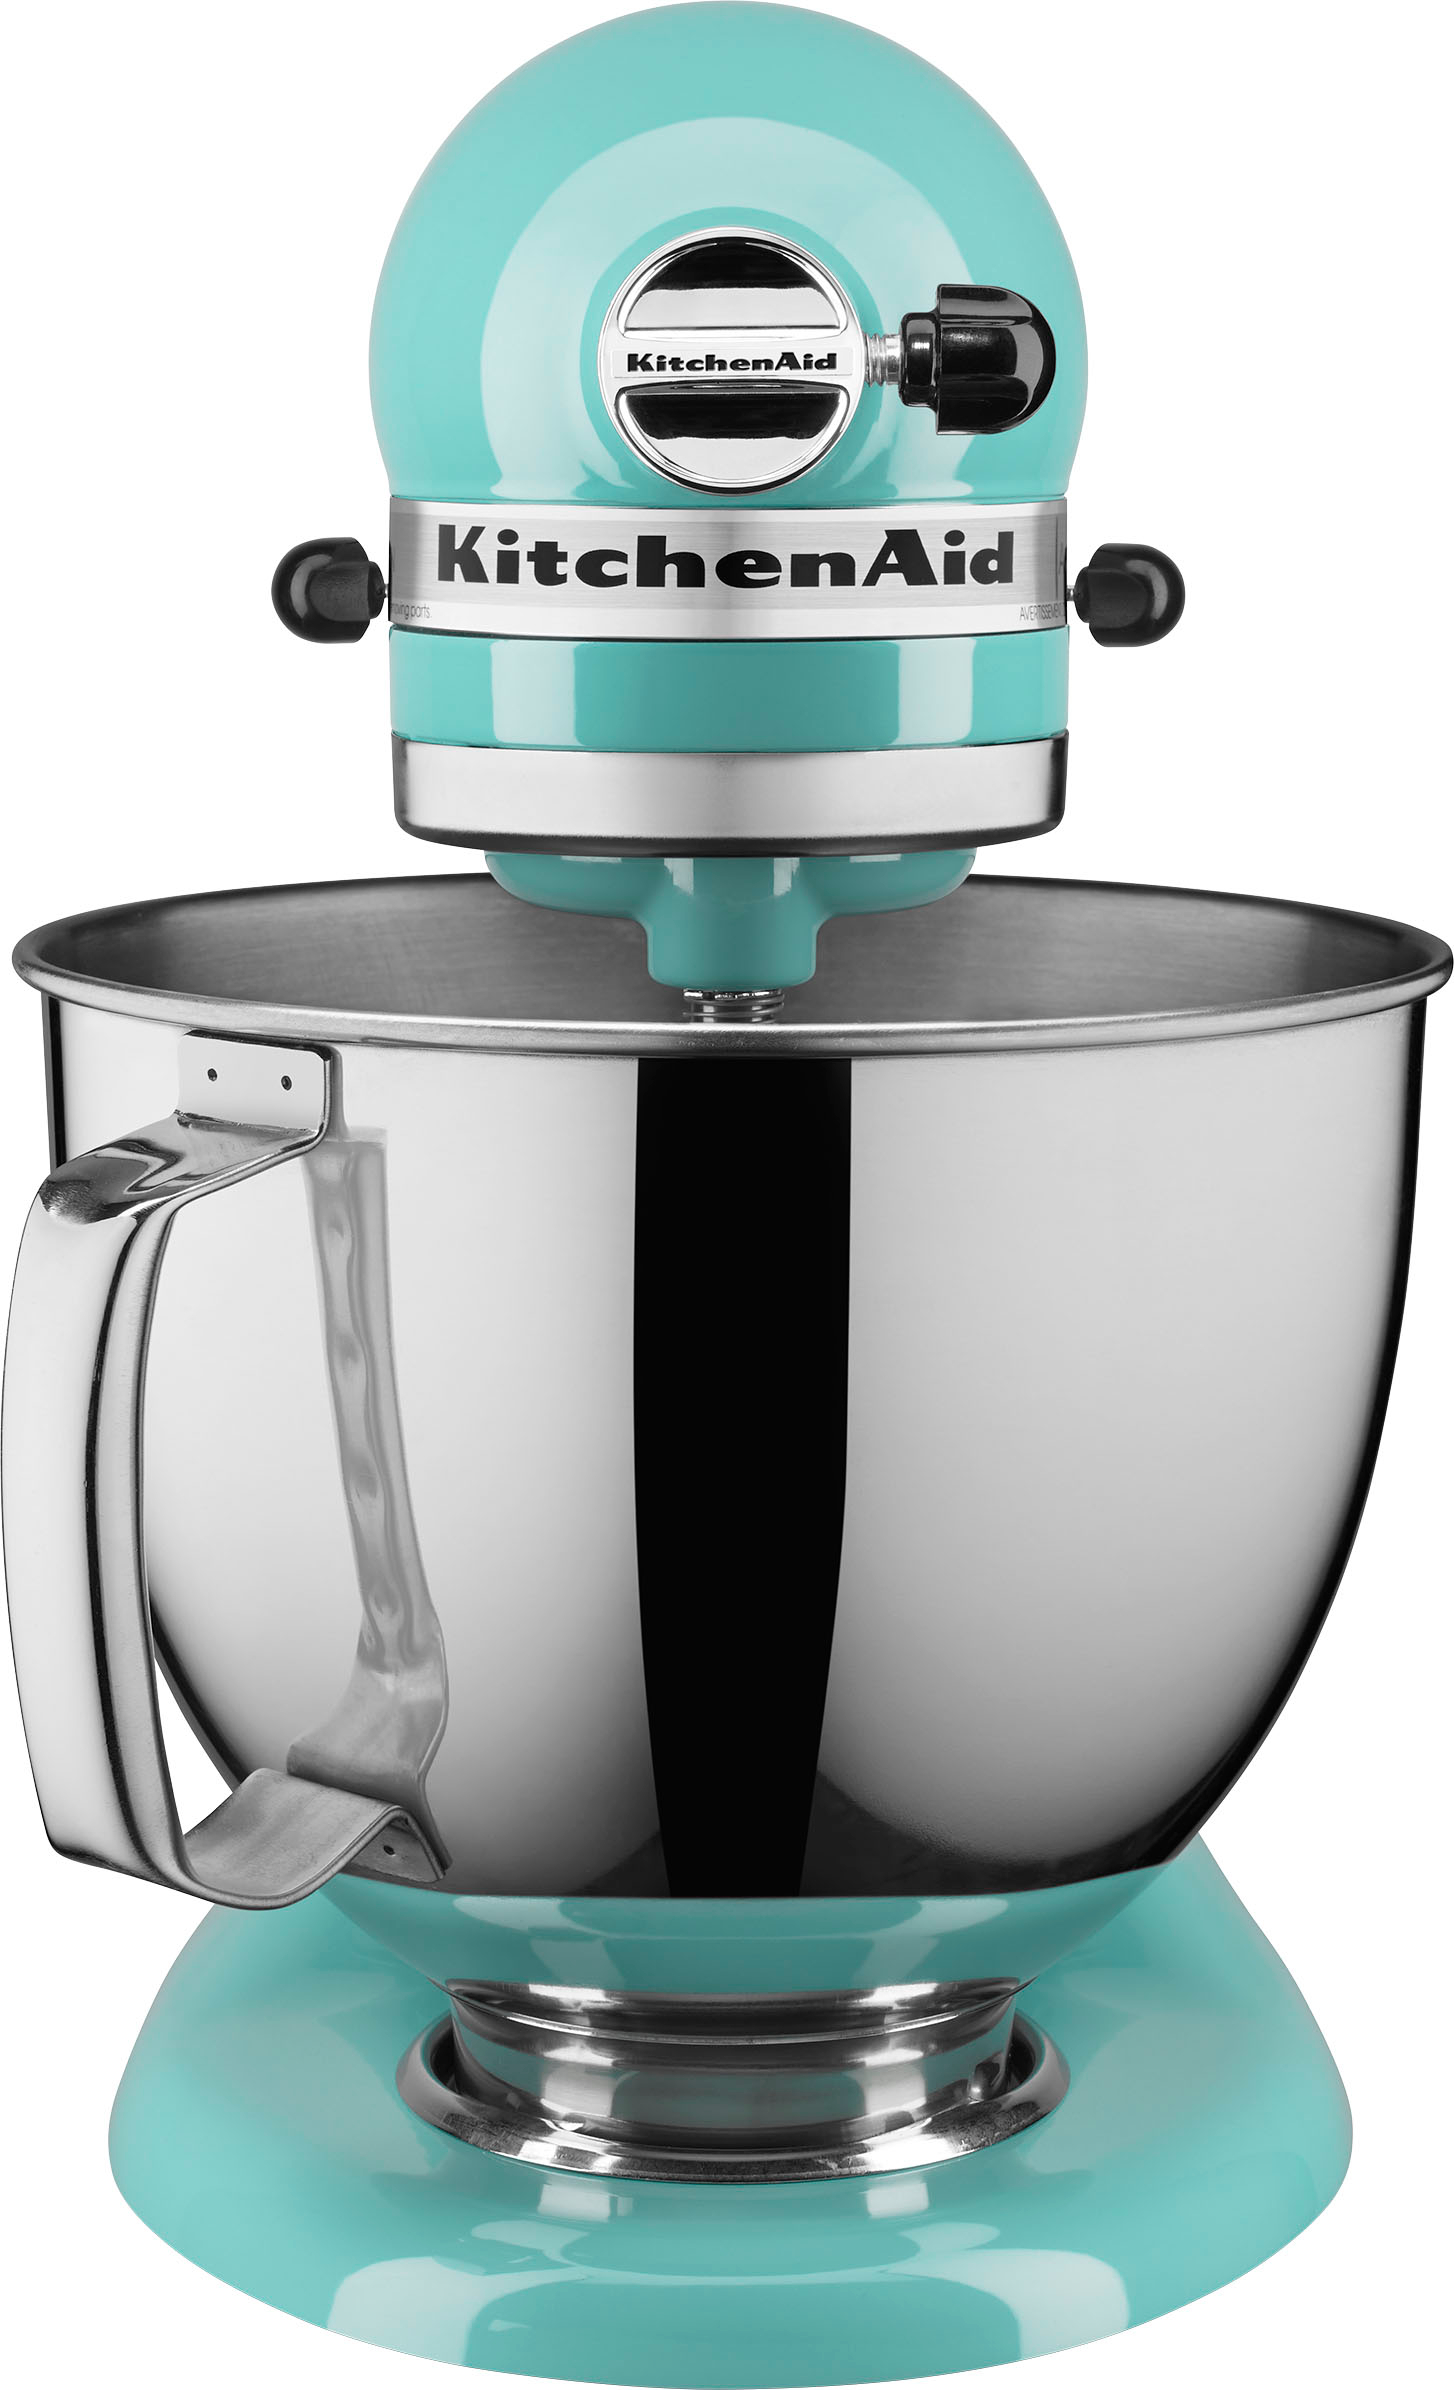 KitchenAid KSM150PSAQ Artisan Aqua Sky Teal 5-Quart Tilt-Head Stand Mixer +  Reviews, Crate & Barrel